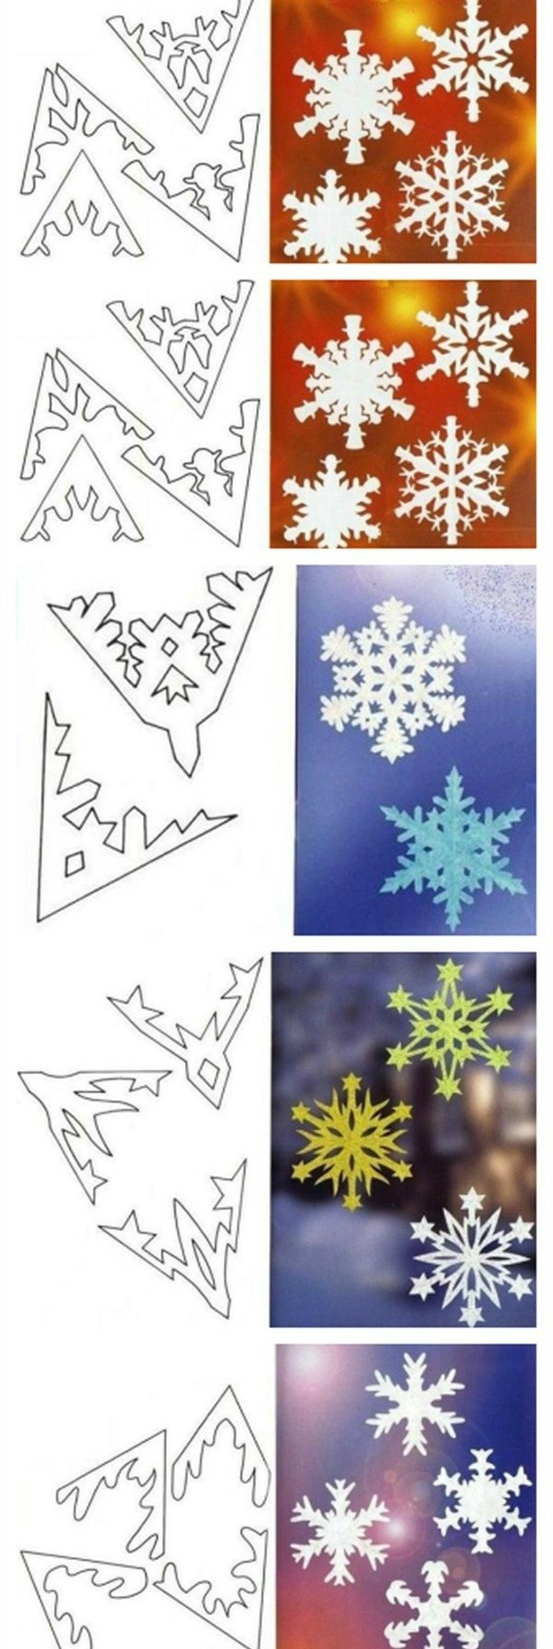 DIY-Snowflake-Paper-Patterns-4